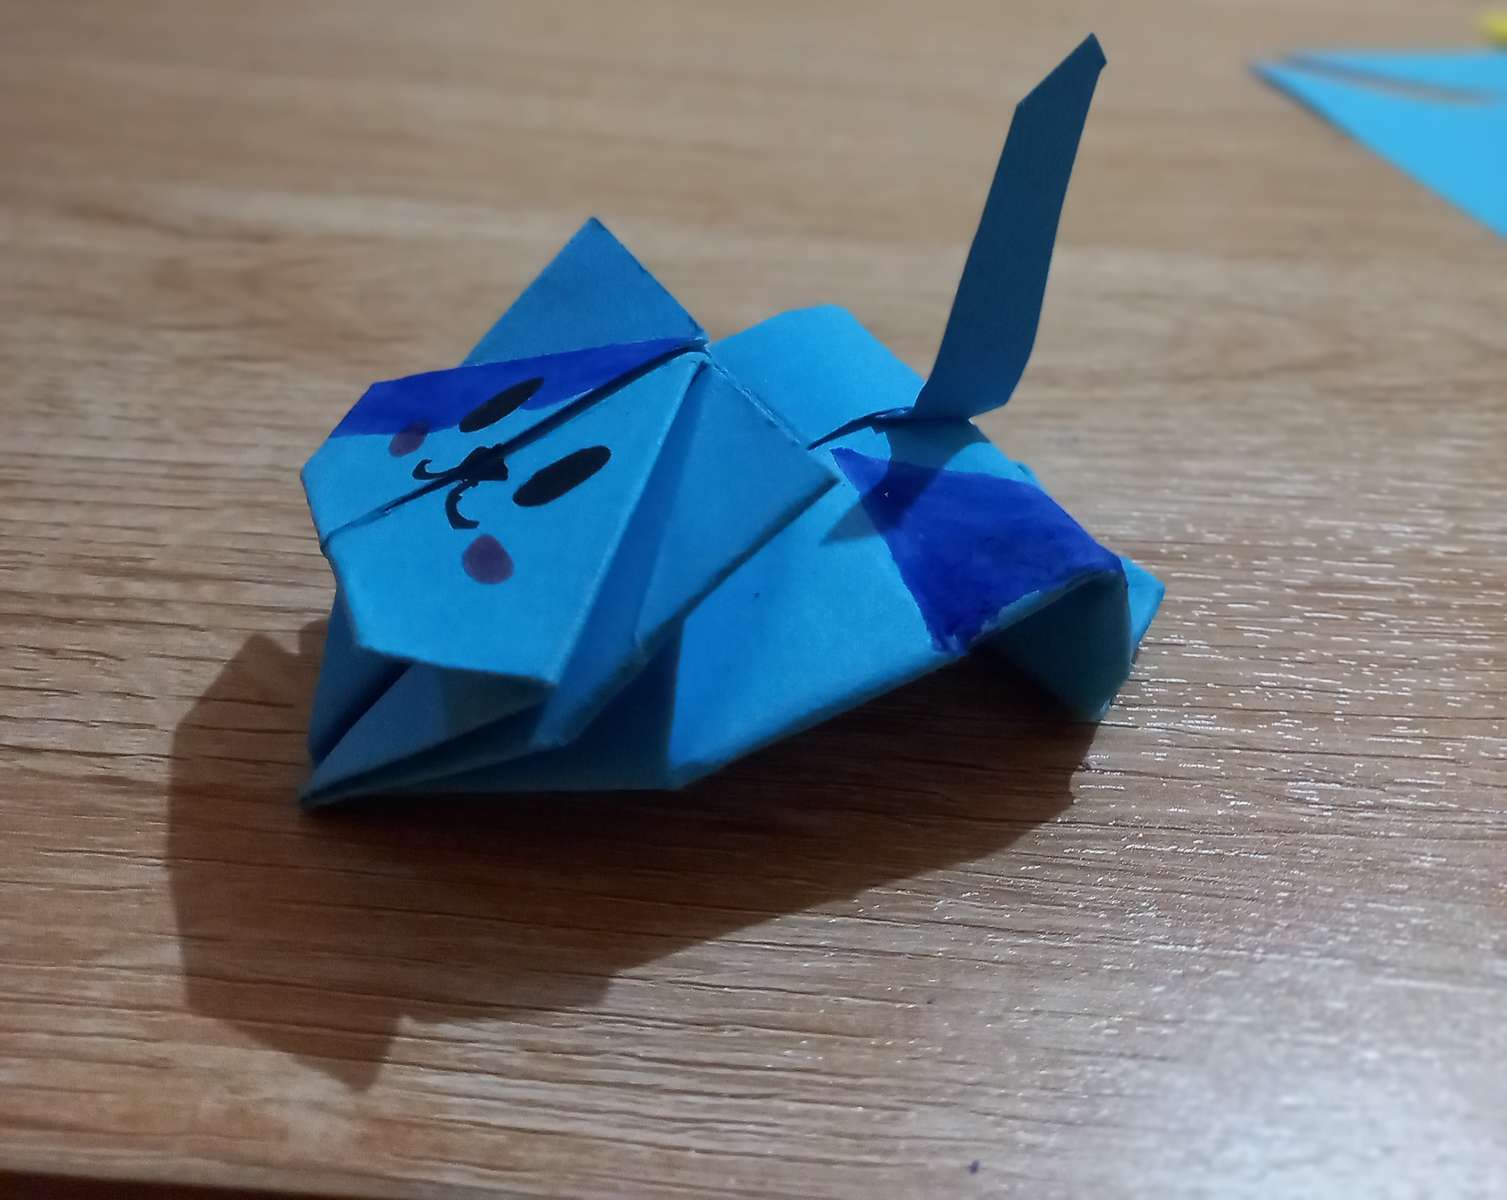 Гато де Оригами пазл онлайн из фото